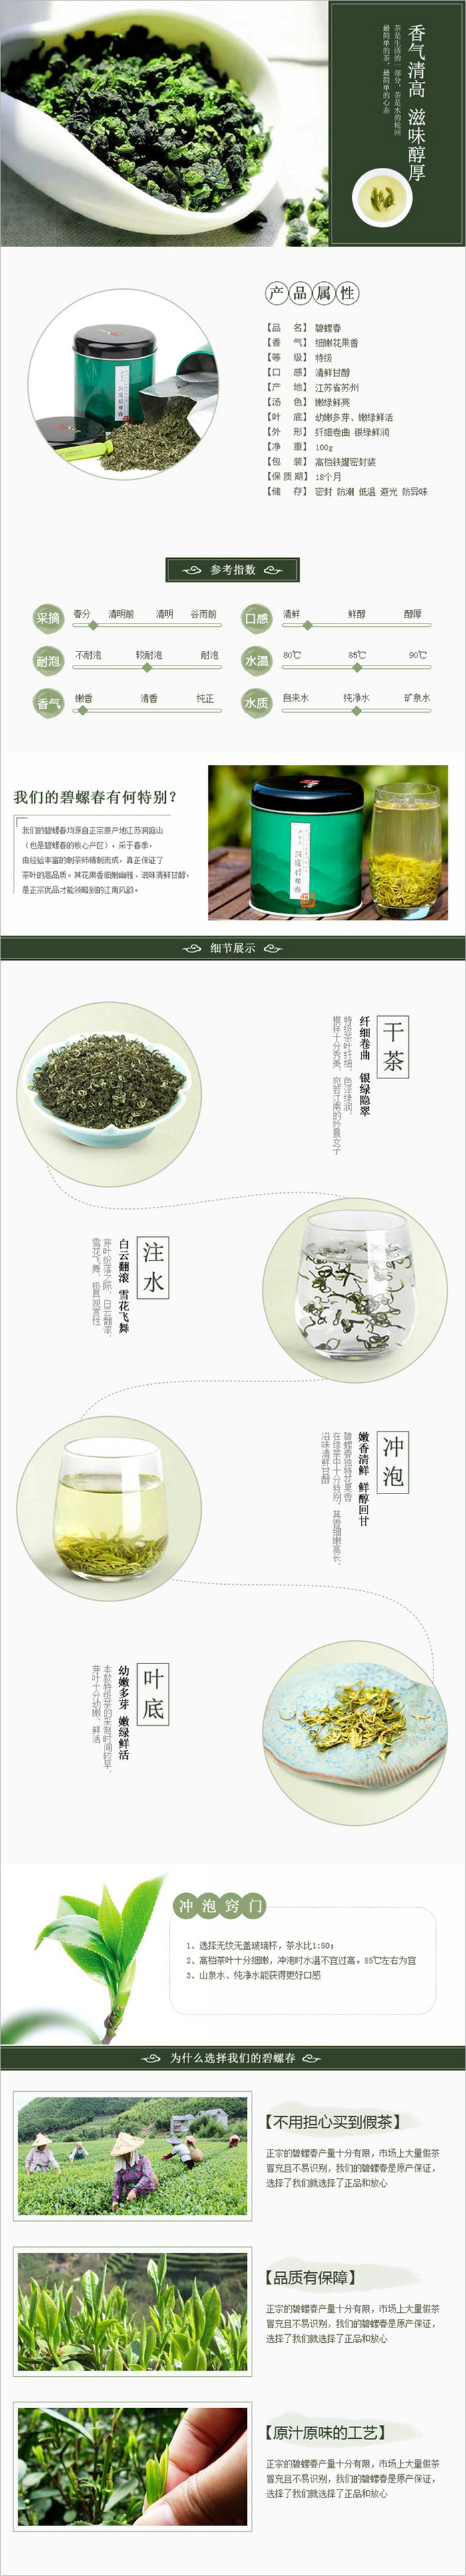 淘宝美工板栗淘宝天猫茶叶清新中国风茶叶作品